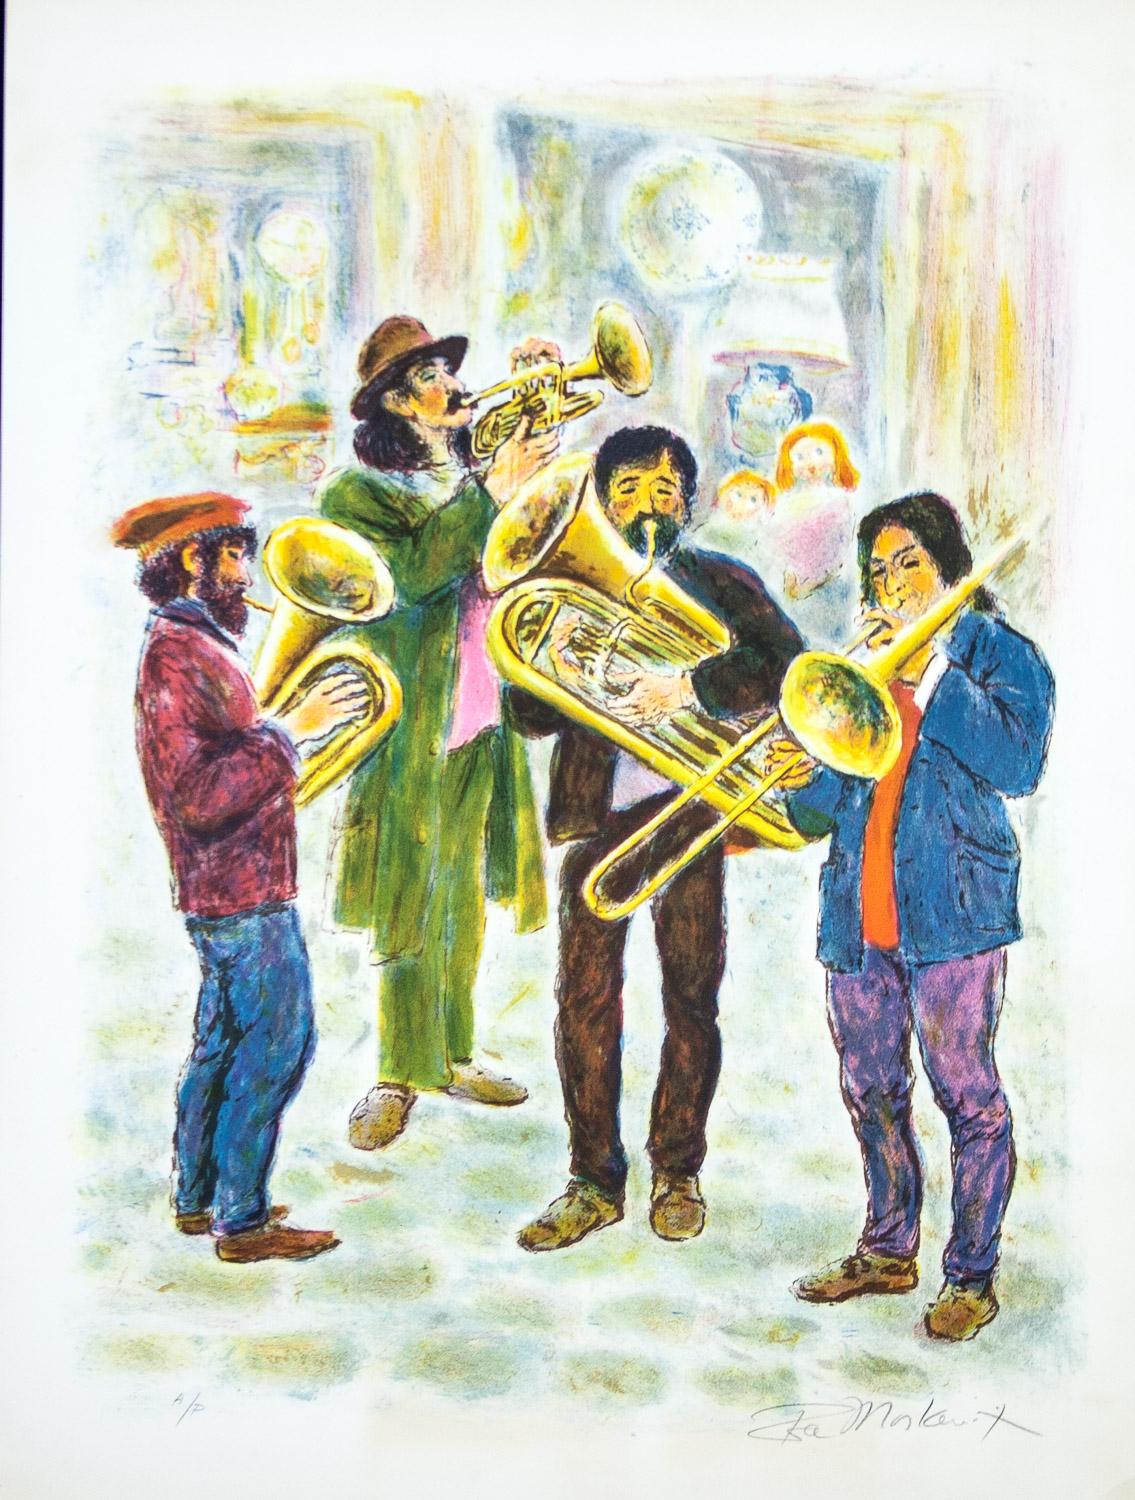      Street Musicians von Ira Moskowitz zeigt vier Musiker, die verschiedene Horn-Instrumente wie Trompeten und Posaunen spielen. Hinter ihnen scheinen einige Kinder aus einem Fenster zu schauen und das Schauspiel zu verfolgen. Die vier Männer